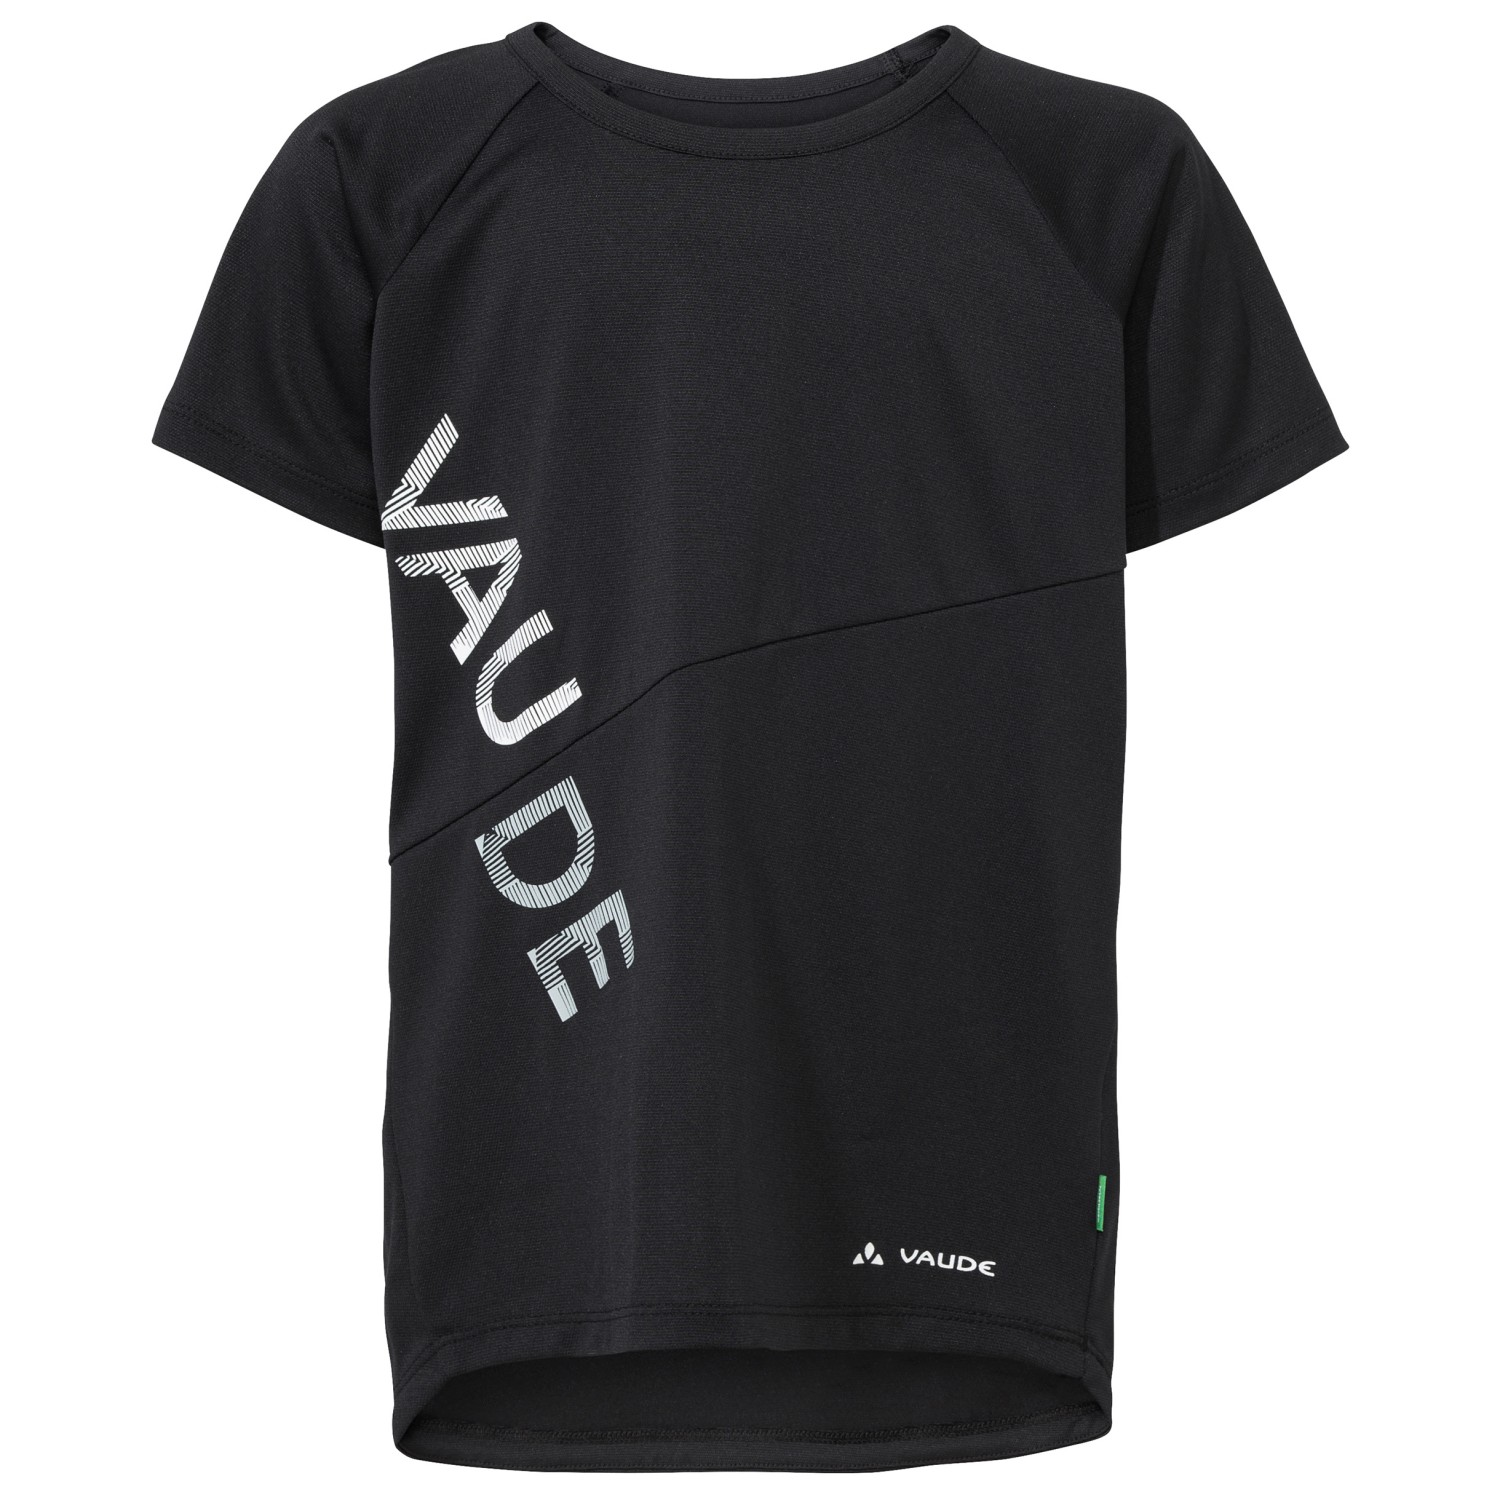 Функциональная рубашка Vaude Kid's Moab T Shirt II, черный функциональная рубашка vaude tekoa t shirt iii цвет nordic blue